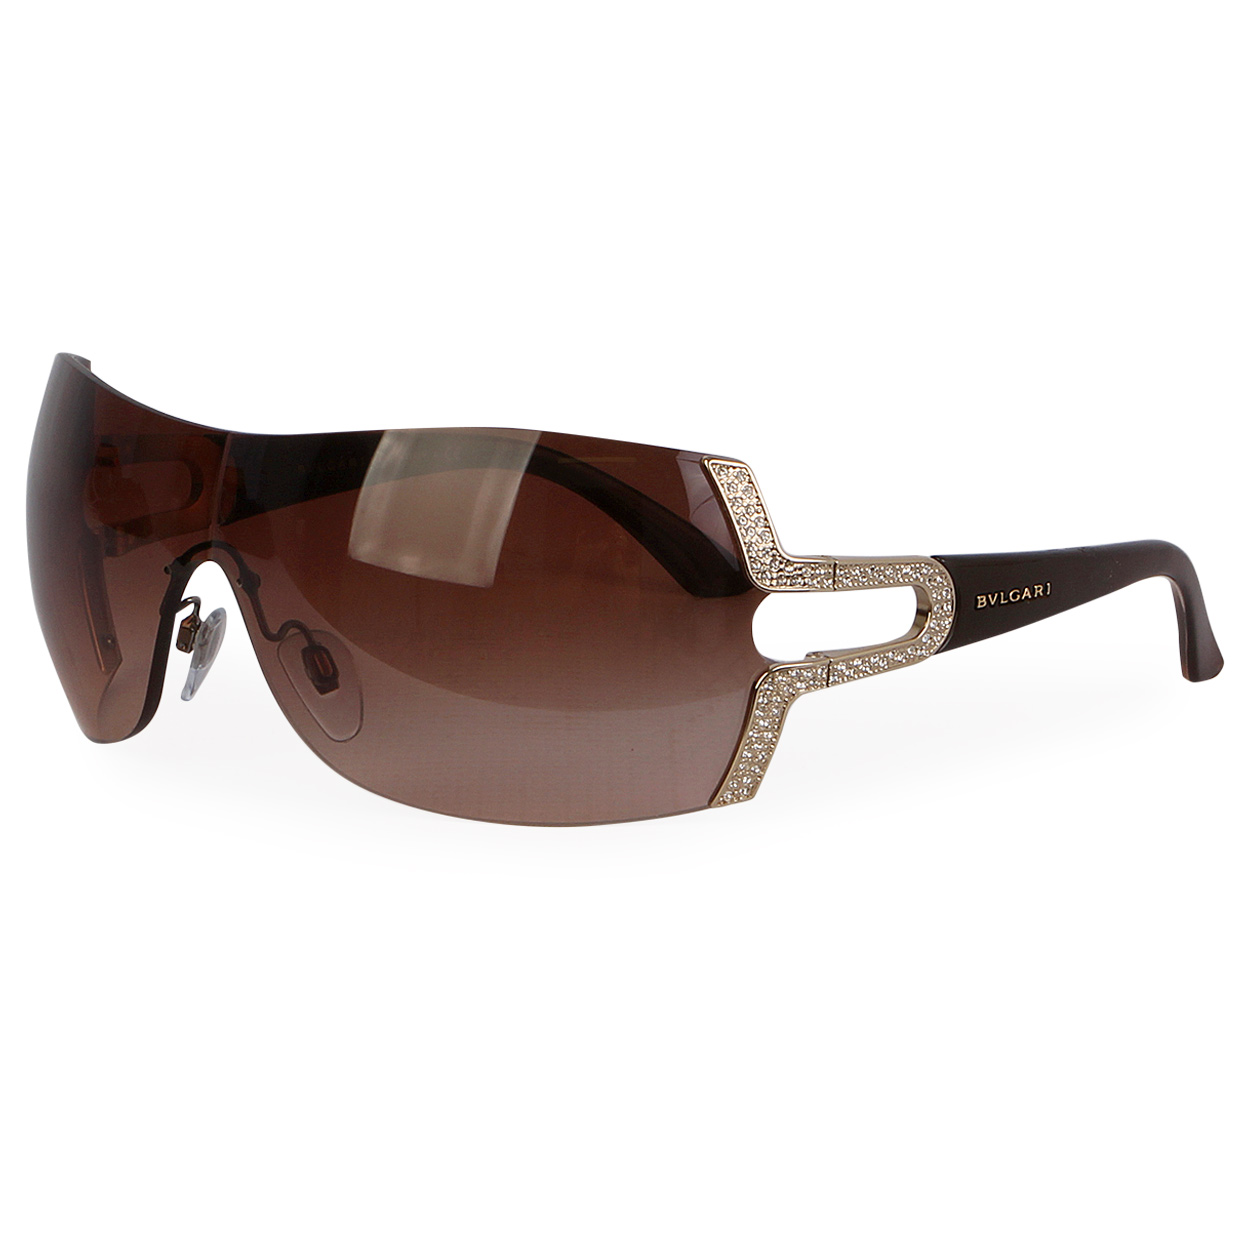 BVLGARI Rhinestones Sunglasses 6038 B 